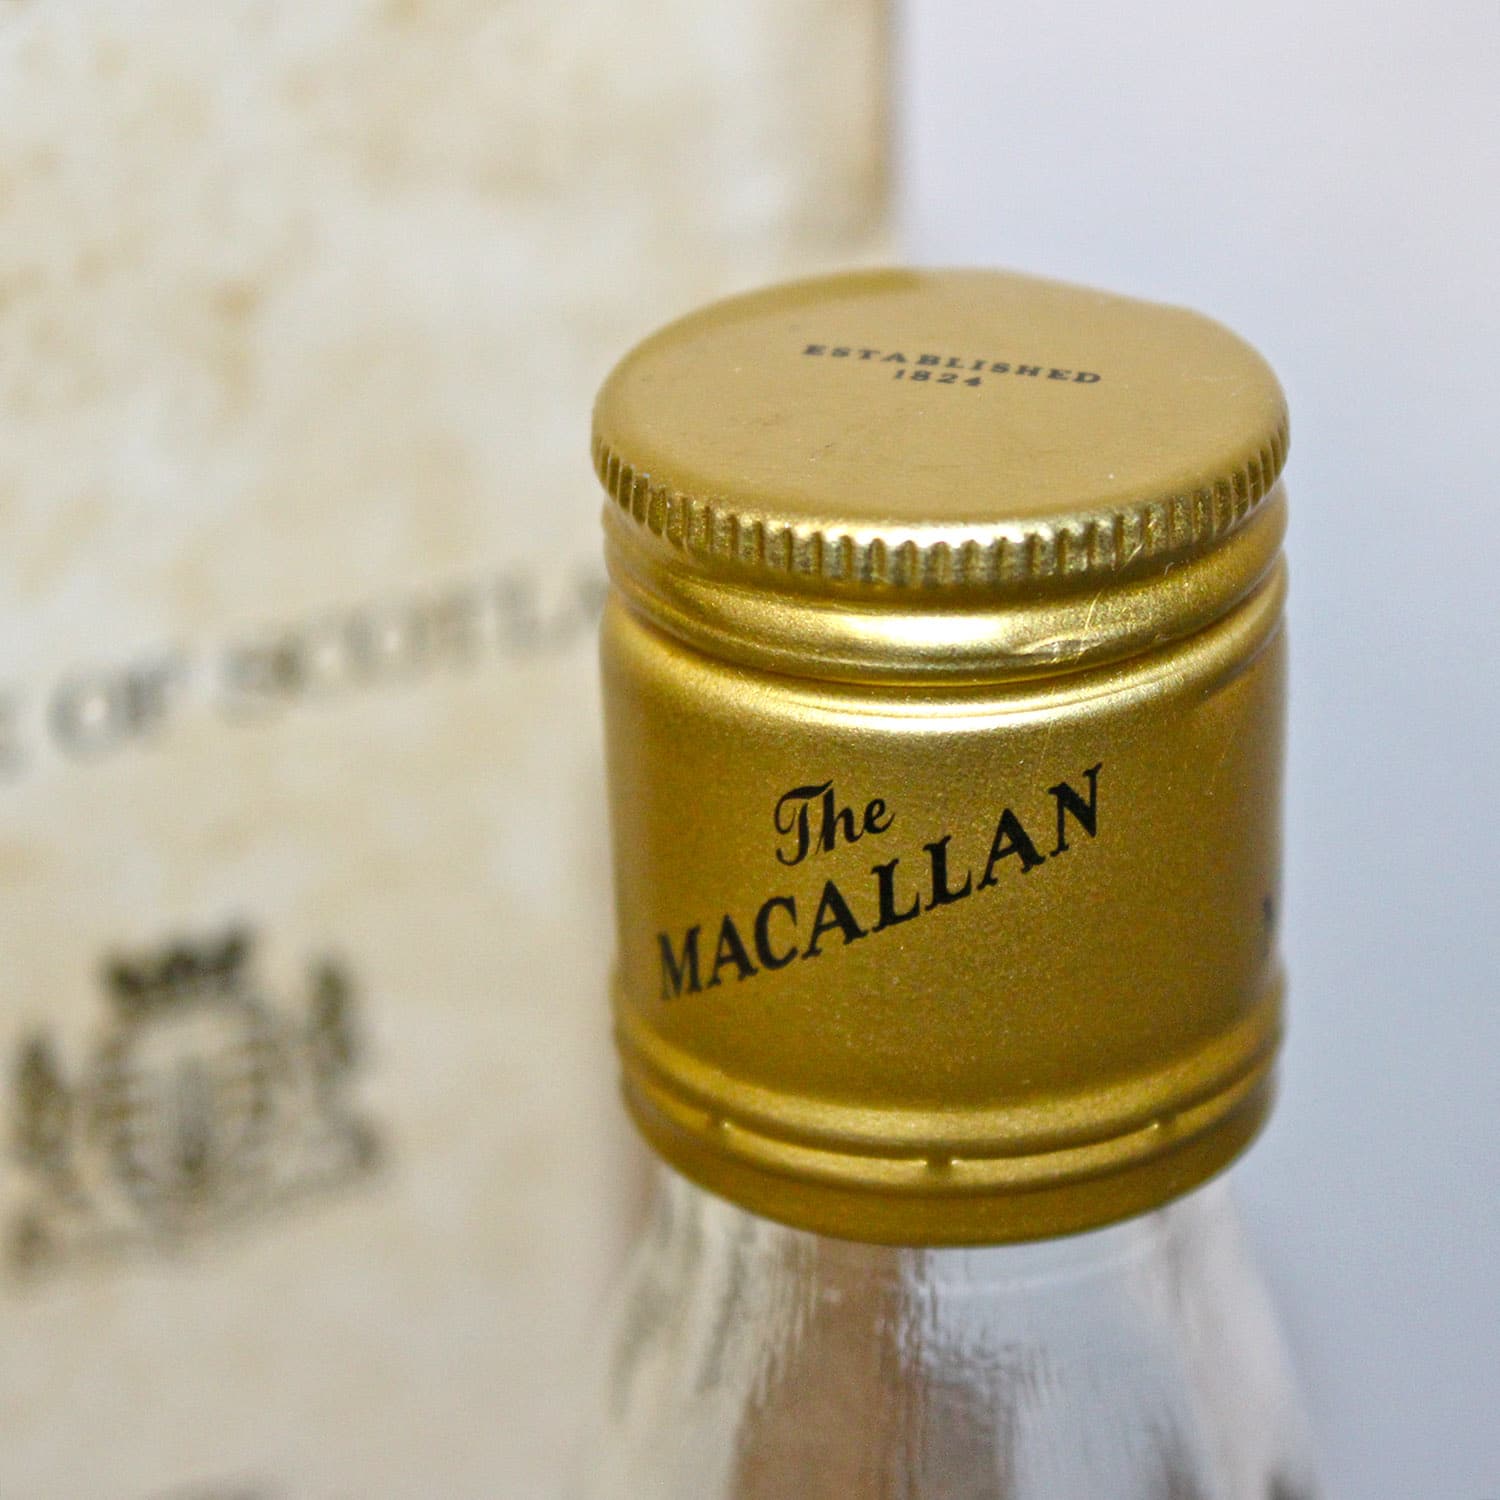 Macallan 1963 capsule